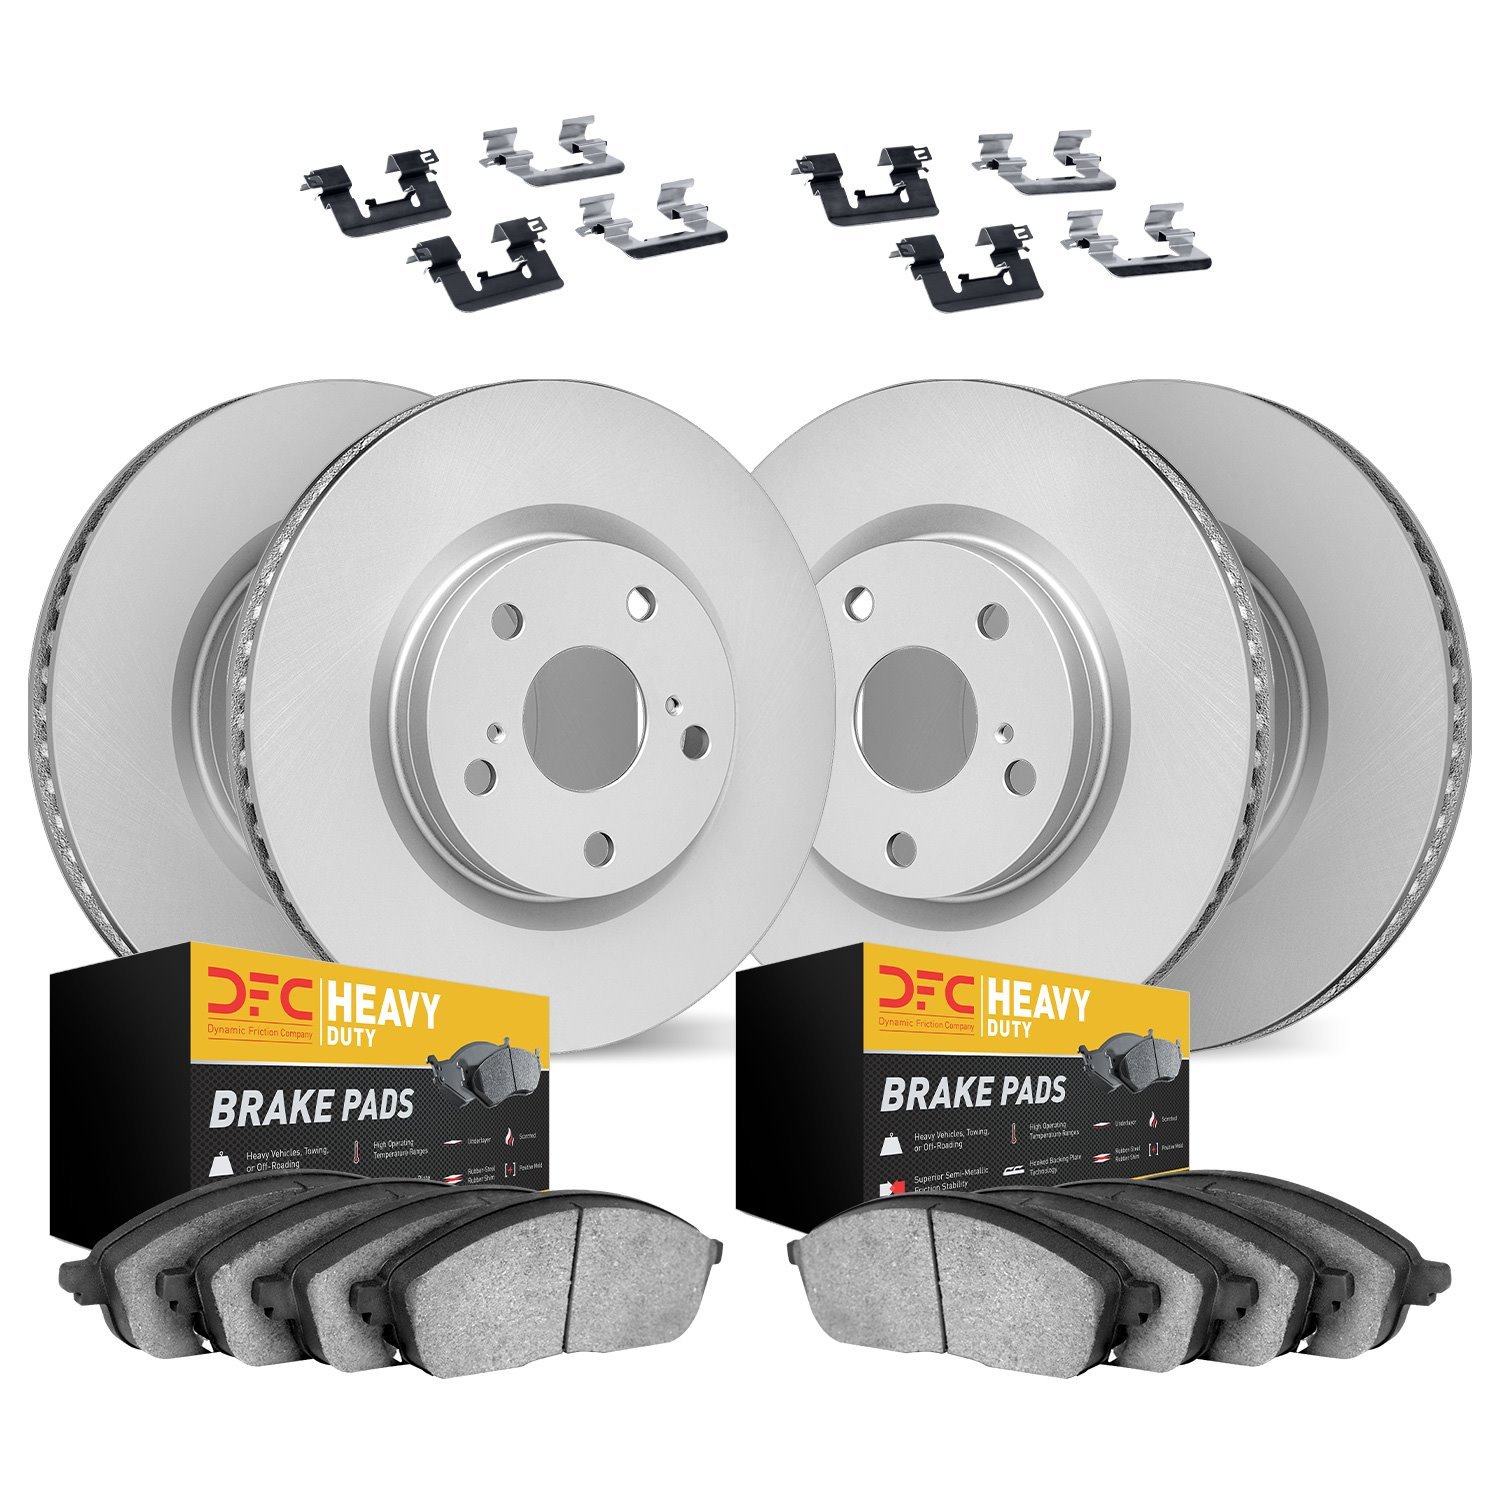 4214-40035 Geospec Brake Rotors w/Heavy-Duty Brake Pads & Hardware, 2014-2021 Mopar, Position: Front and Rear